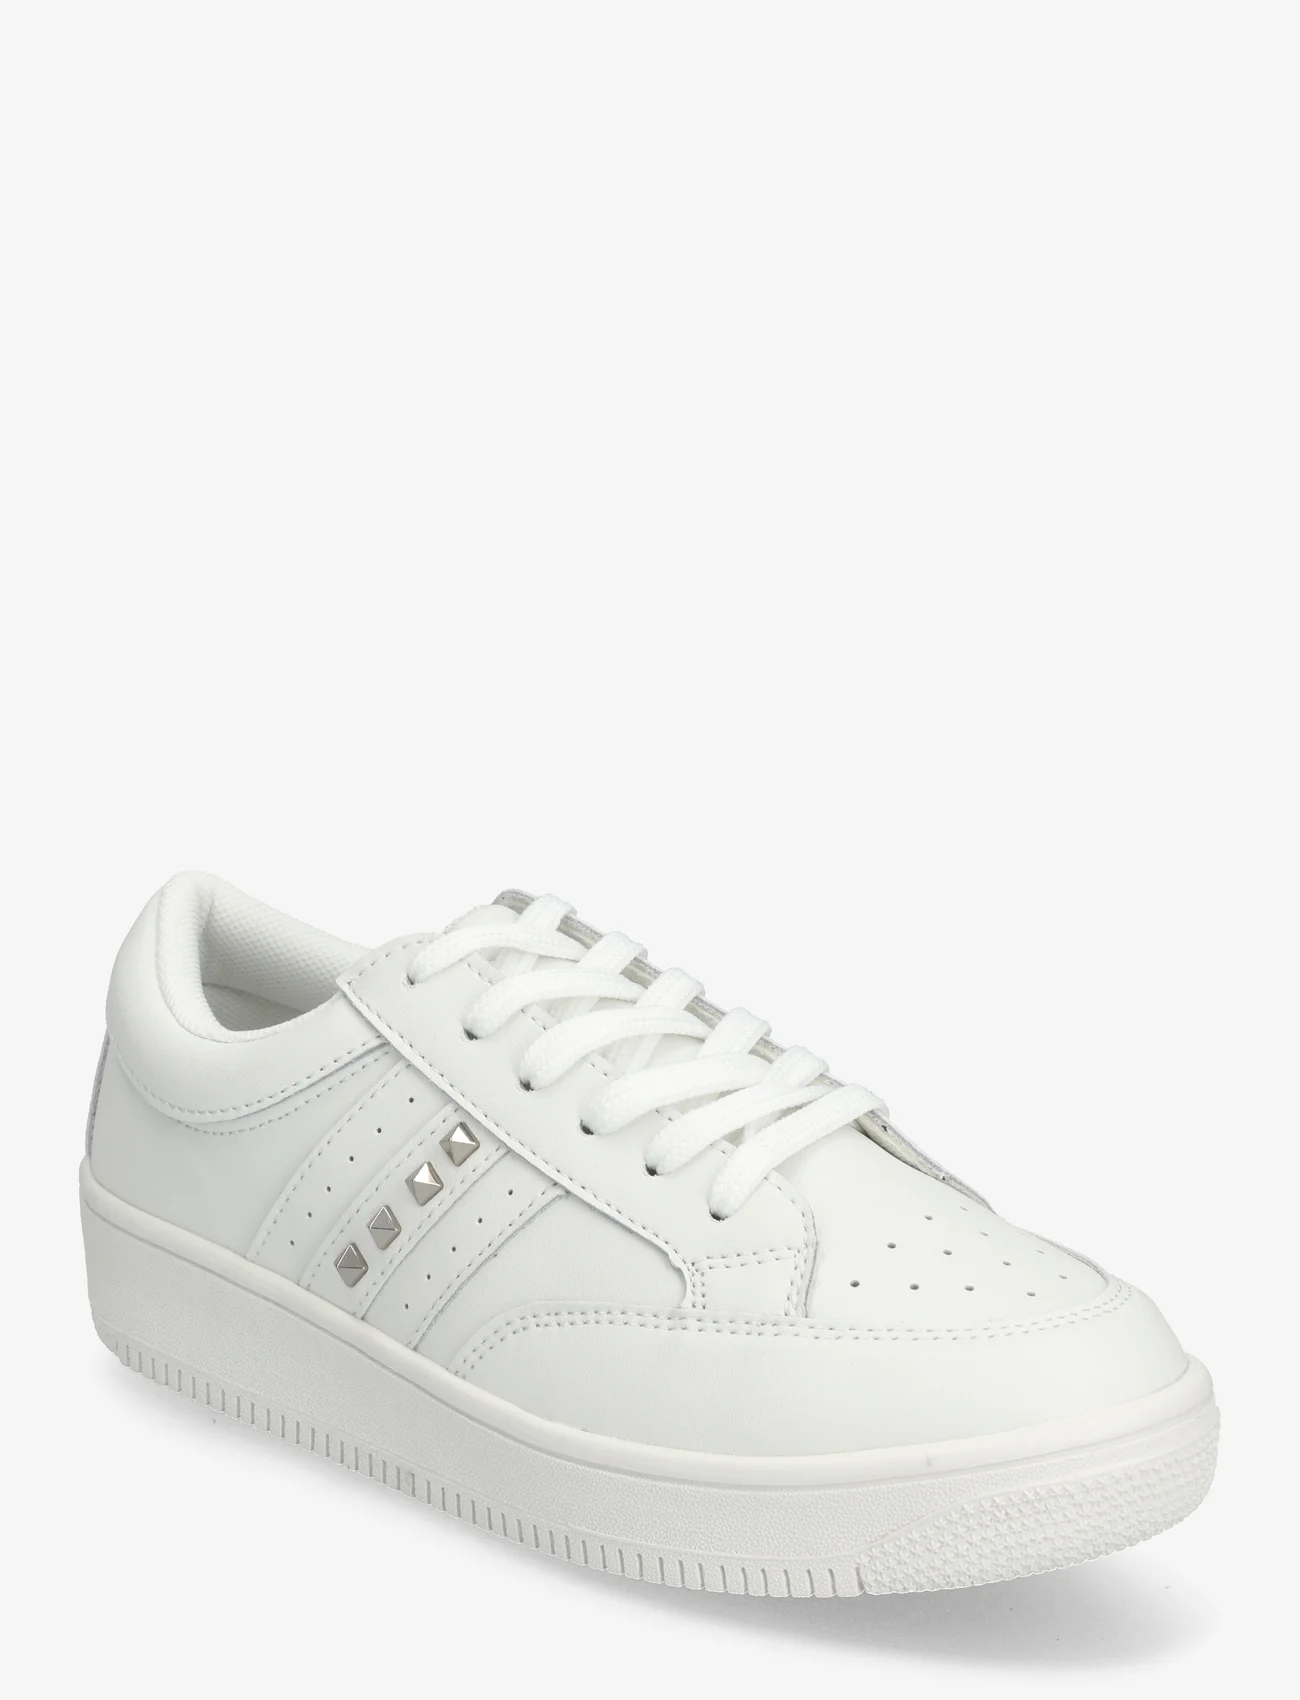 Sofie Schnoor - Sneaker - low top sneakers - white silver - 0